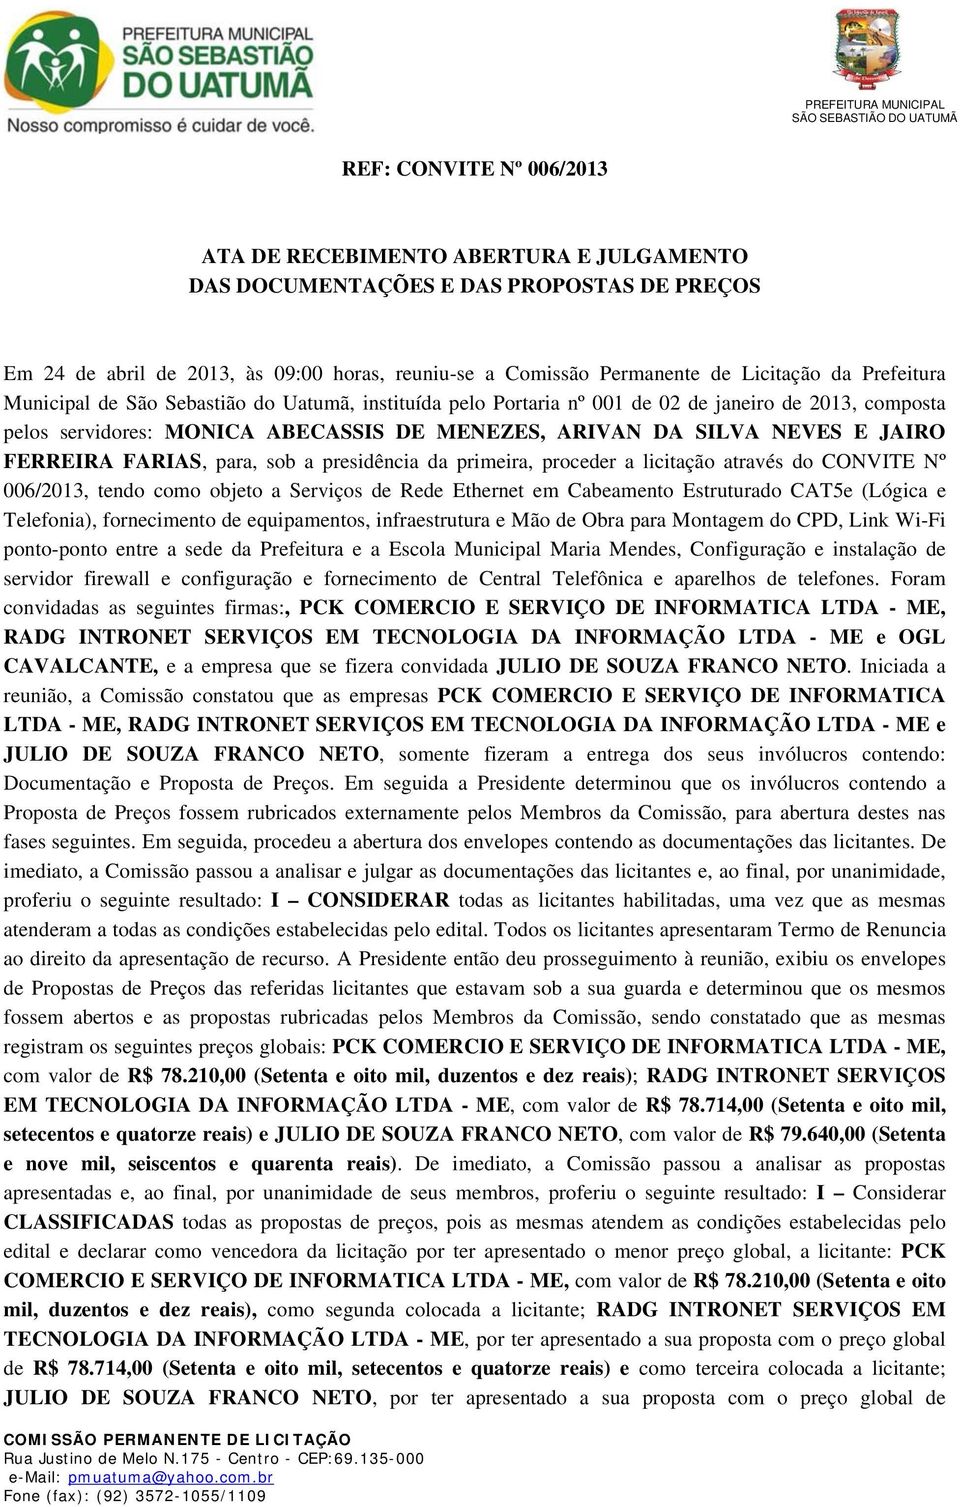 FERREIRA FARIAS, para, sob a presidência da primeira, proceder a licitação através do CONVITE Nº 006/2013, tendo como objeto a Serviços de Rede Ethernet em Cabeamento Estruturado CAT5e (Lógica e